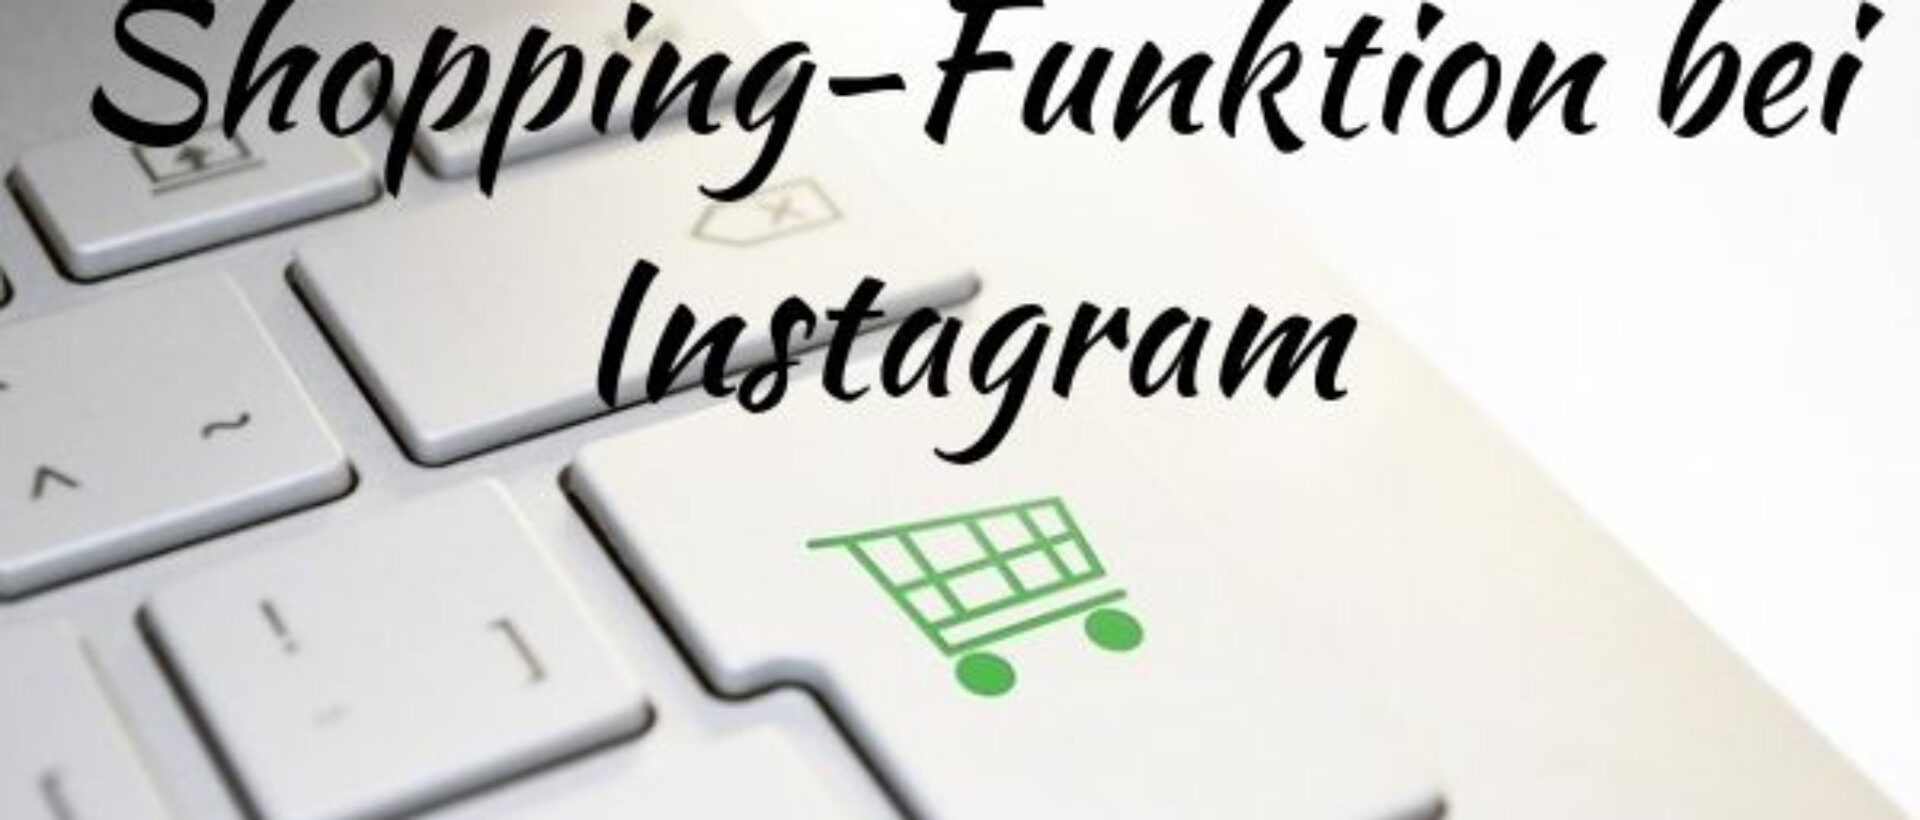 Instagram-Update 2019 zu Shopping Funktionen